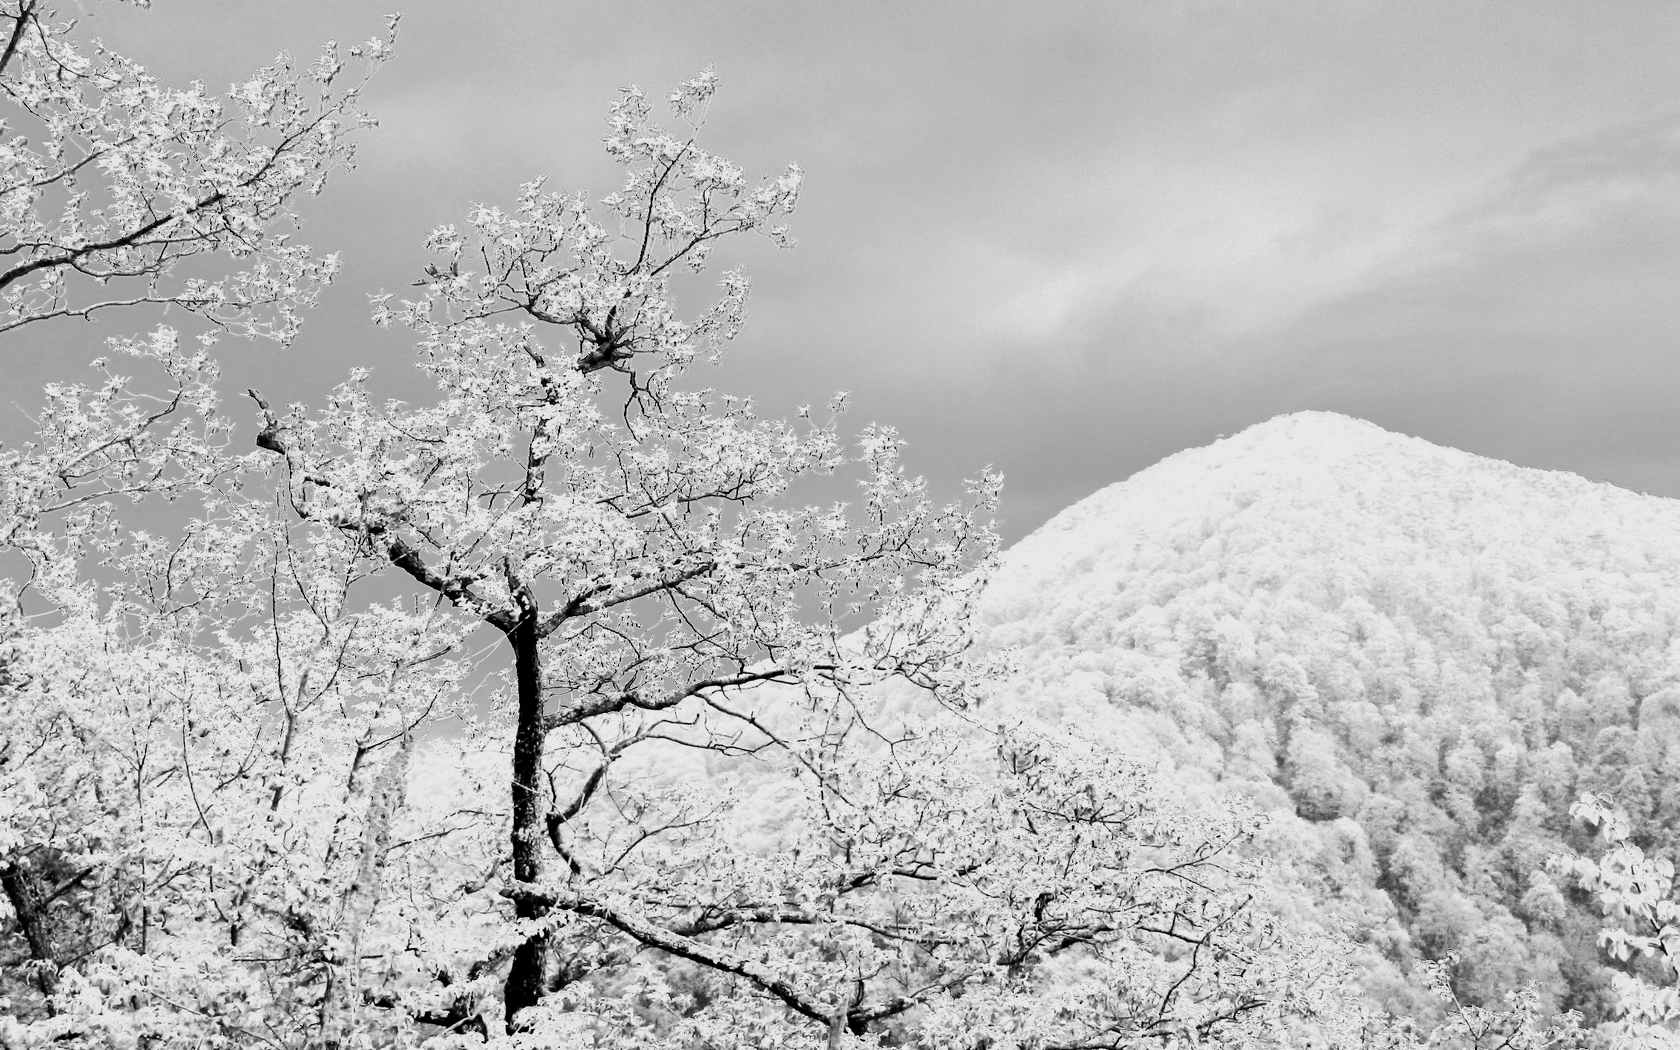 Скачать обои бесплатно Зима, Снег, Гора, Дерево, Ландшафт, Земля/природа картинка на рабочий стол ПК